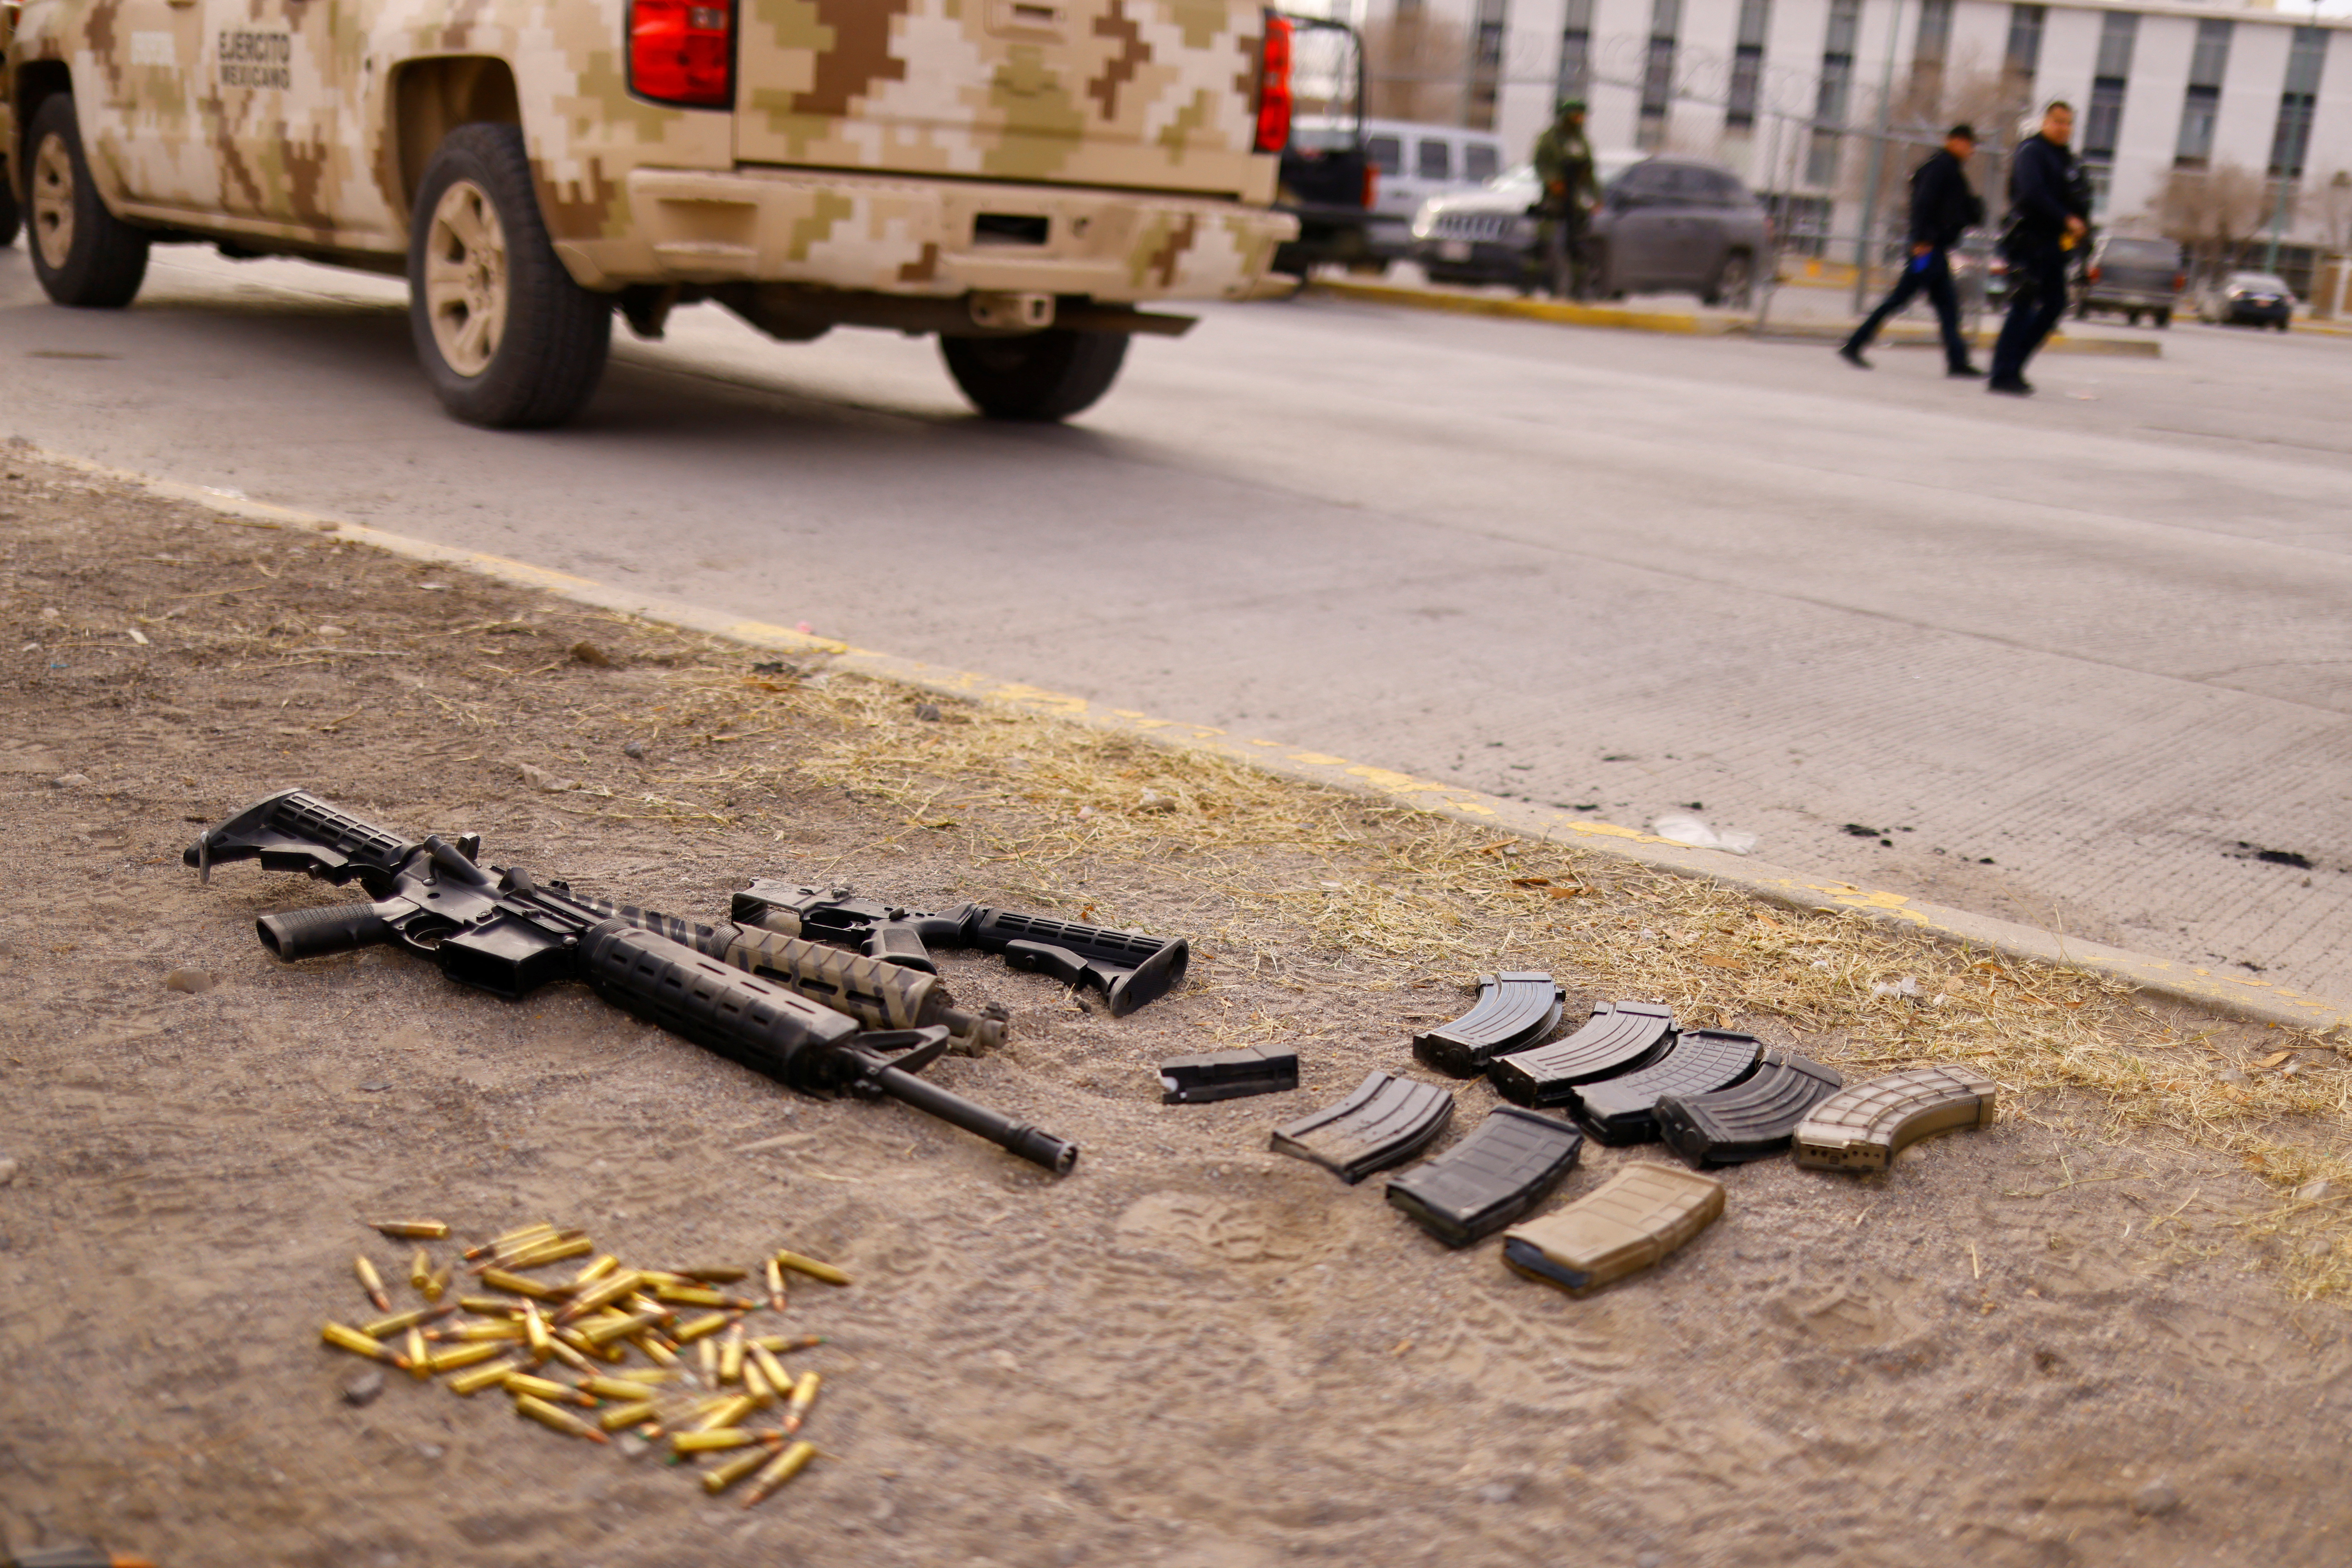 Droga, armas y cartuchos fueron algunos de los objetos asegurado al interior del Cereso No. 3 en Ciudad Juárez, Chihuahua (Foto: REUTERS /Jose Luis Gonzalez)